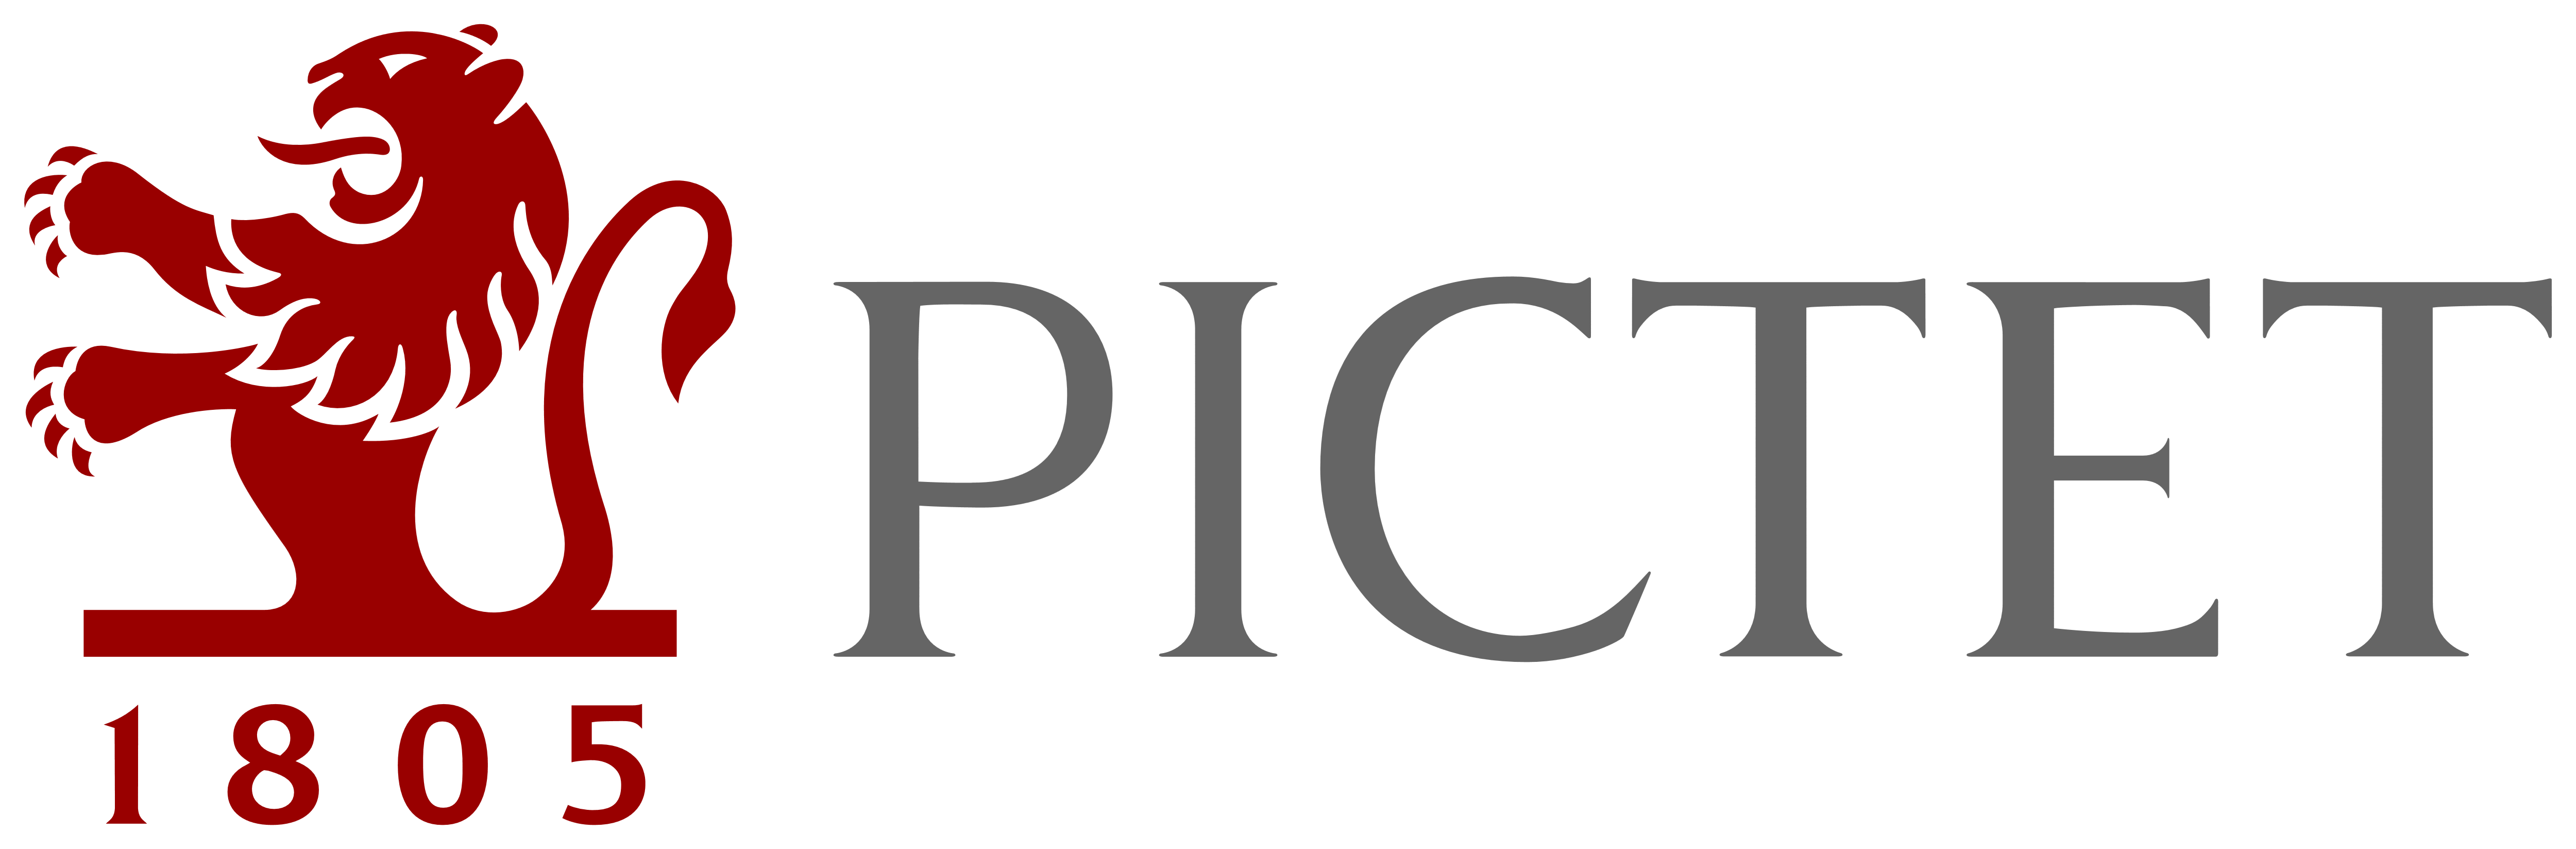 Pictet_logo